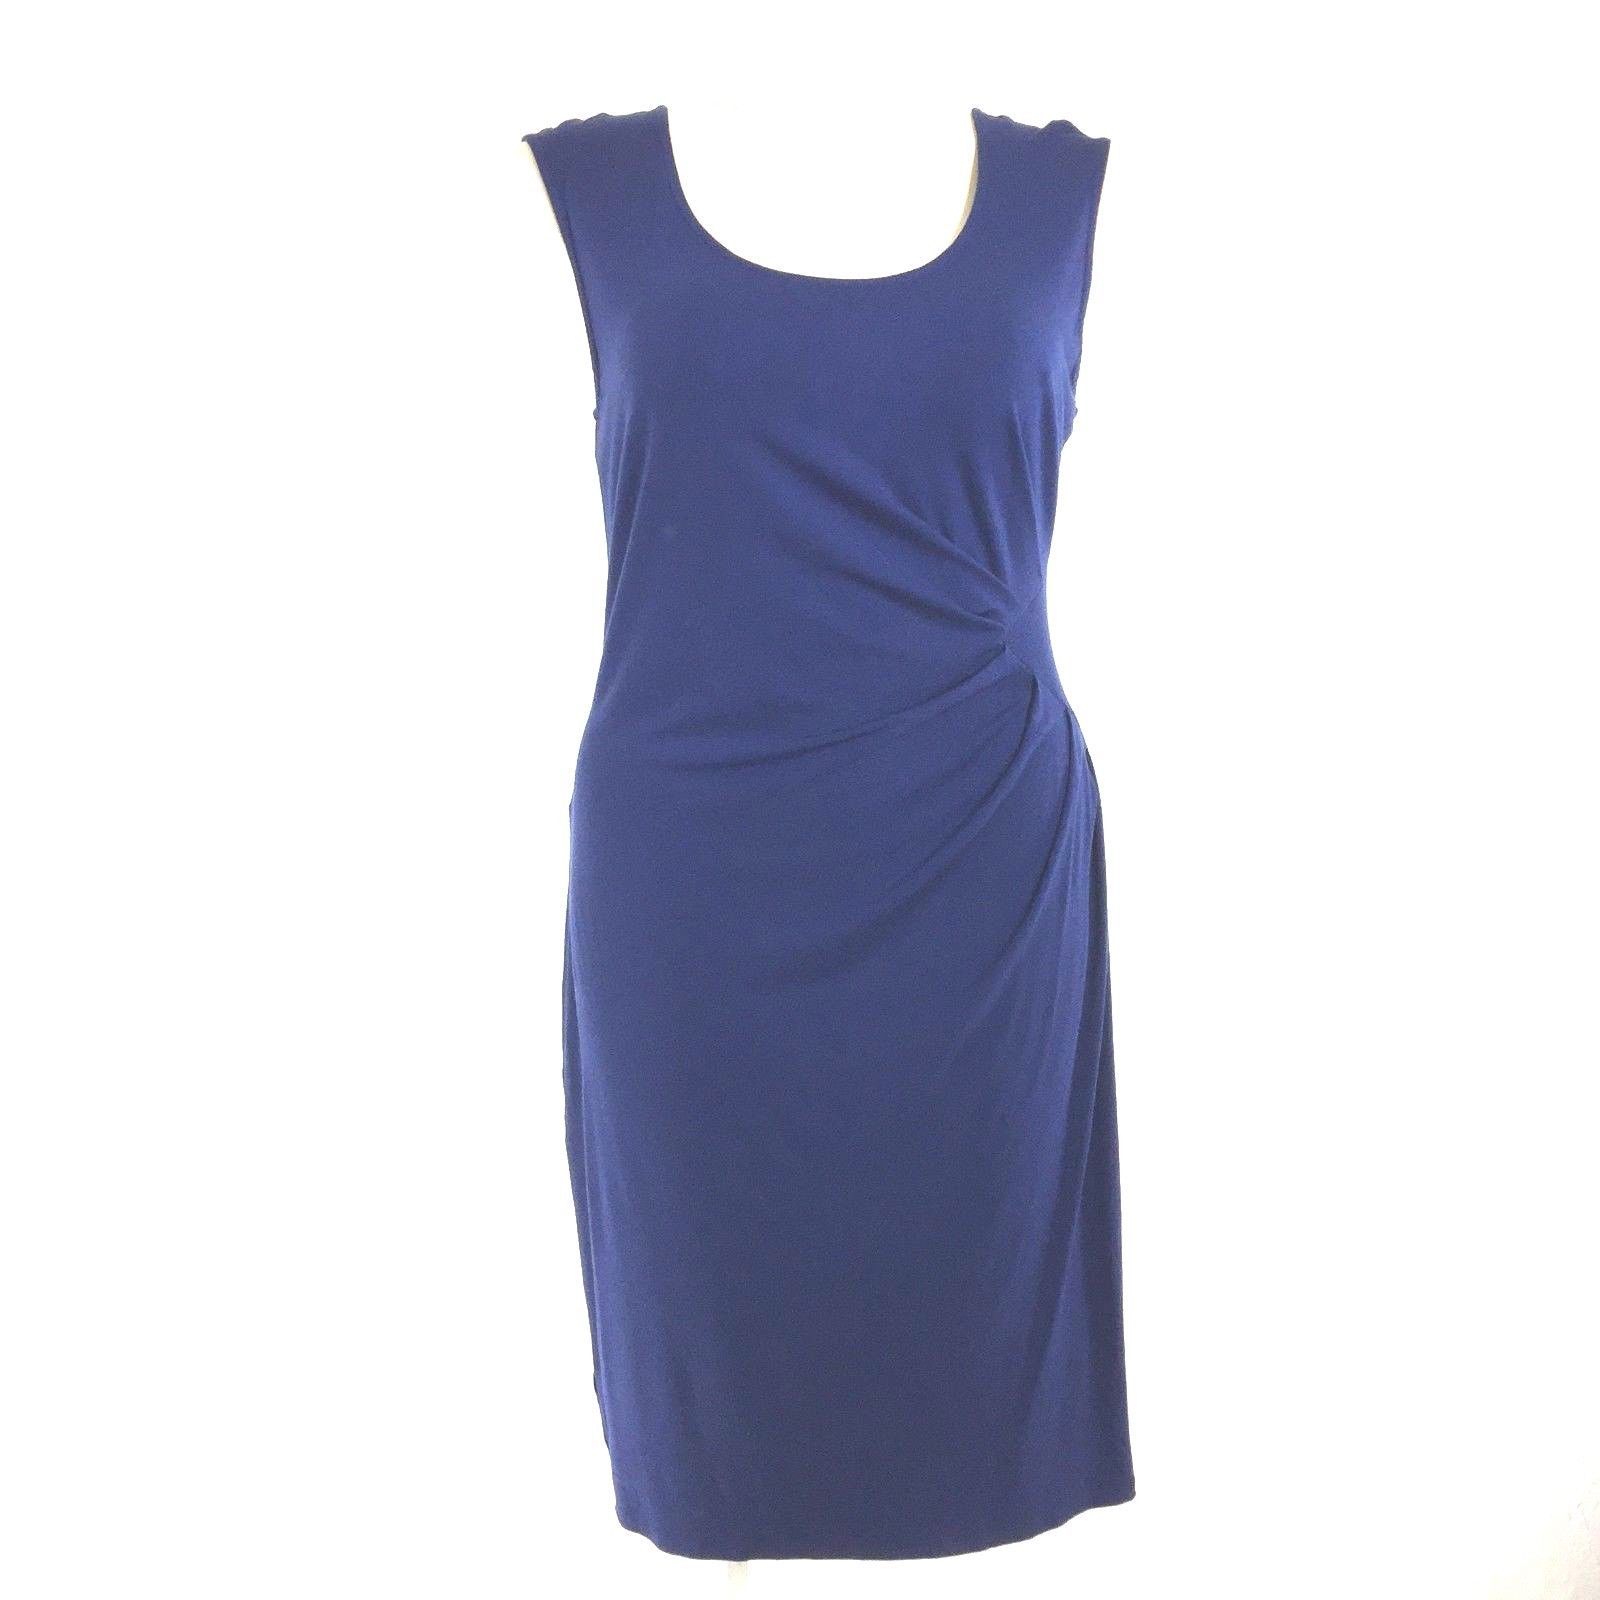 Ann Taylor Dress 16 Petite XL Navy Blue Side Pleat Sheath Rayon Stretch WASHABLE - $19.85